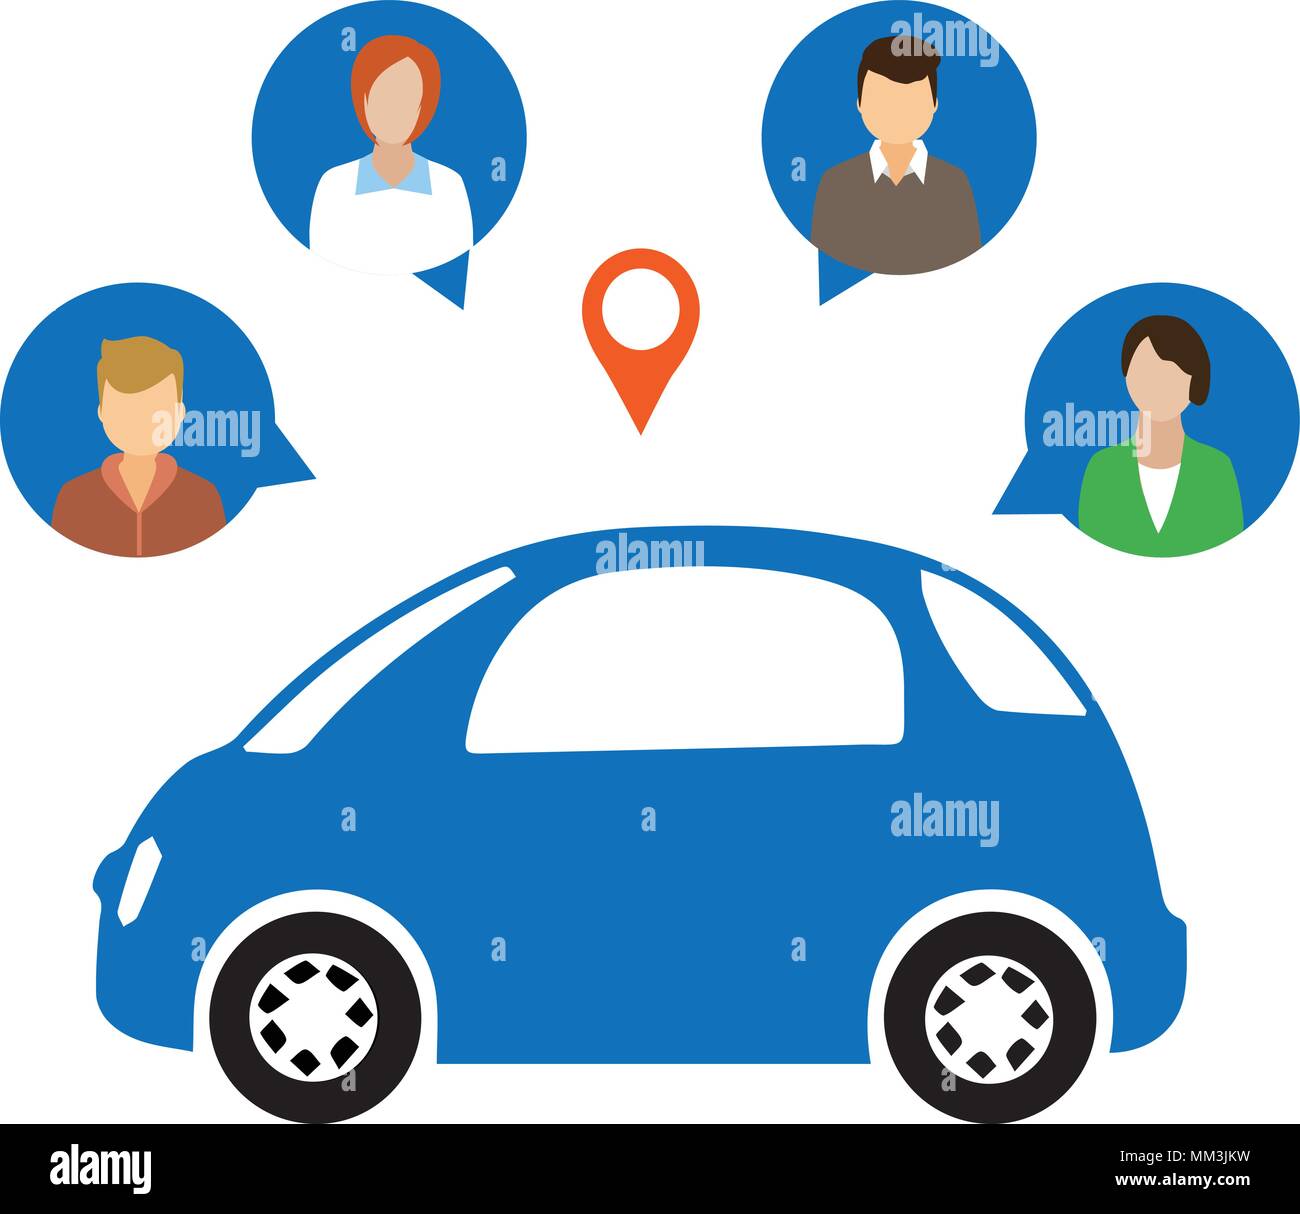 Car Sharing Concept.Social travel concept Stock Vector